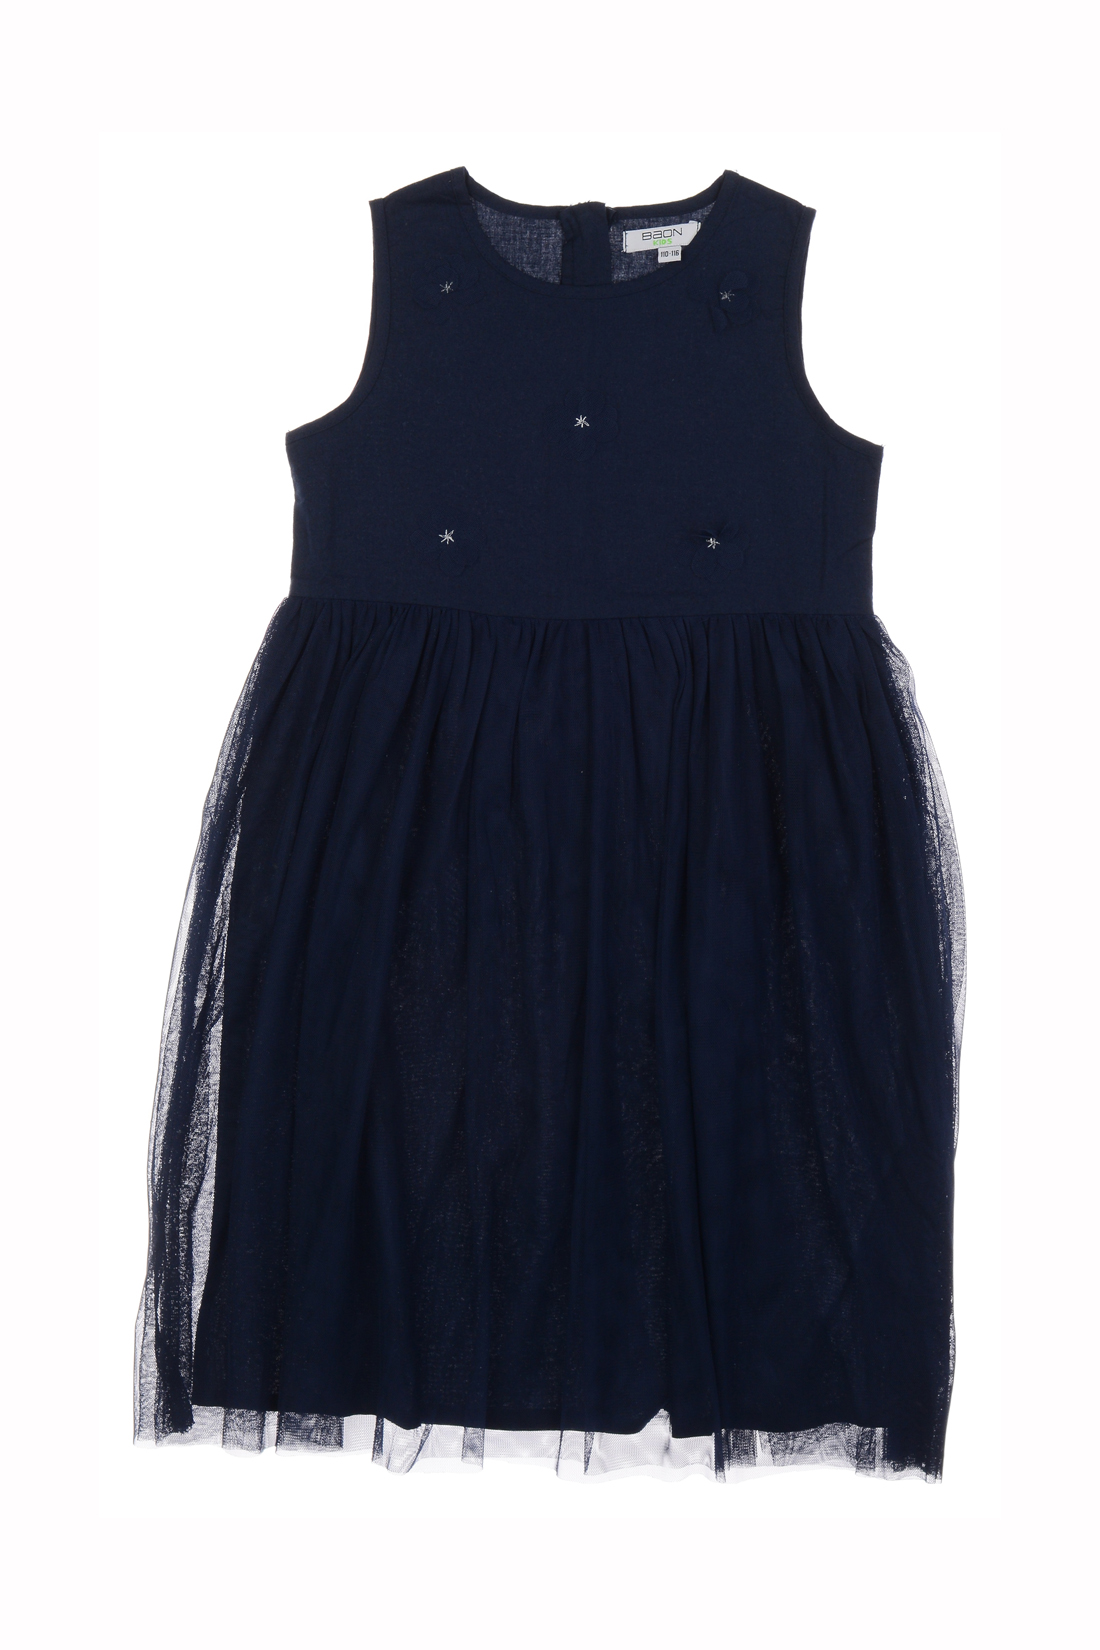 Платье для девочки (арт. baon BK459011), размер 122-128, цвет синий Платье для девочки (арт. baon BK459011) - фото 3